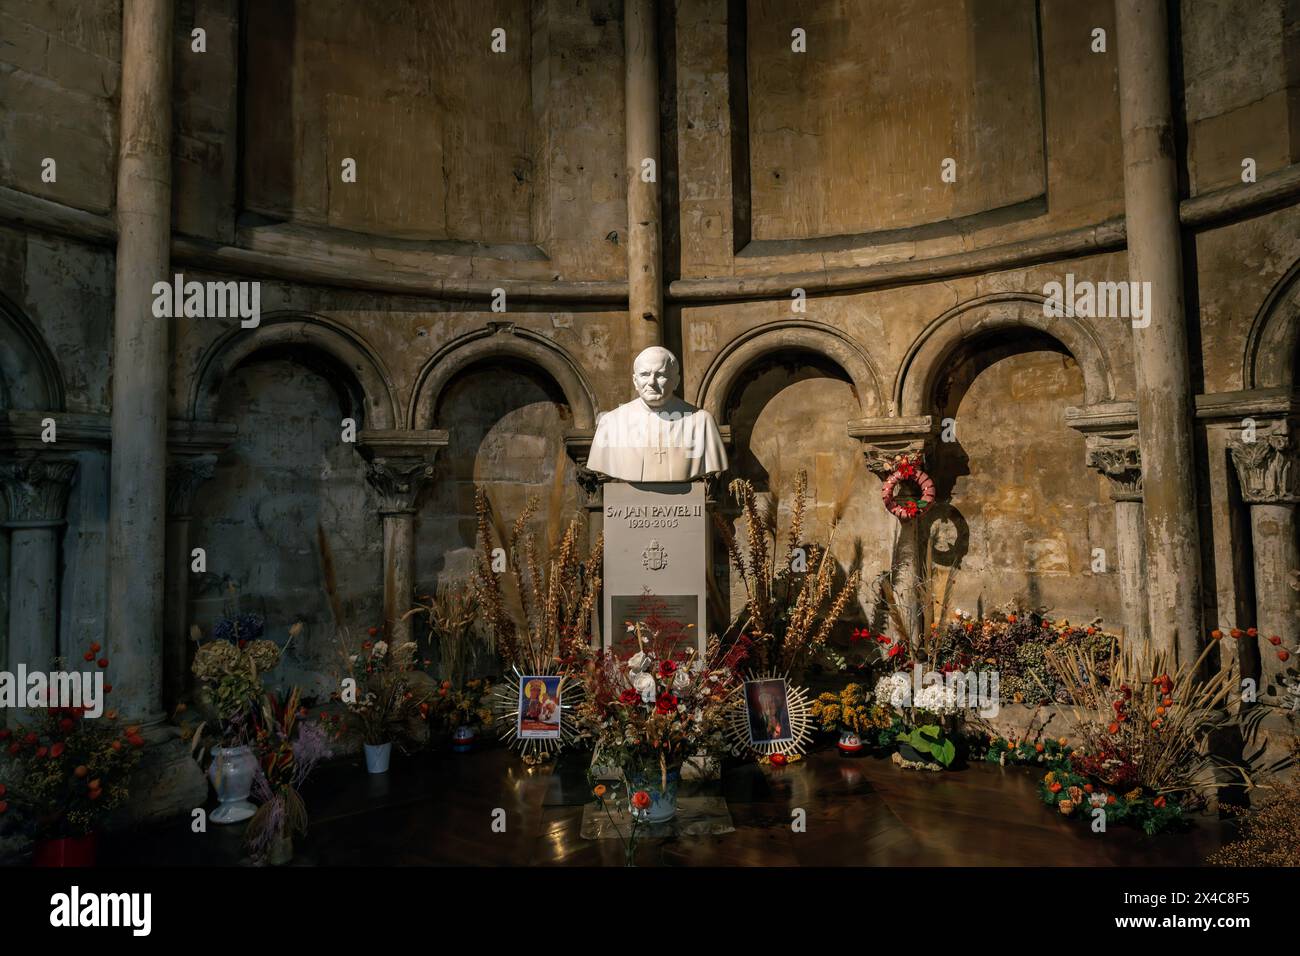 Busto del papa polacco Giovanni Paolo II la Chiesa di Saint-Germain-des-Prés, situata nel quartiere Saint-Germain-des-Prés di Parigi, Francia. La più antica di Parigi Foto Stock